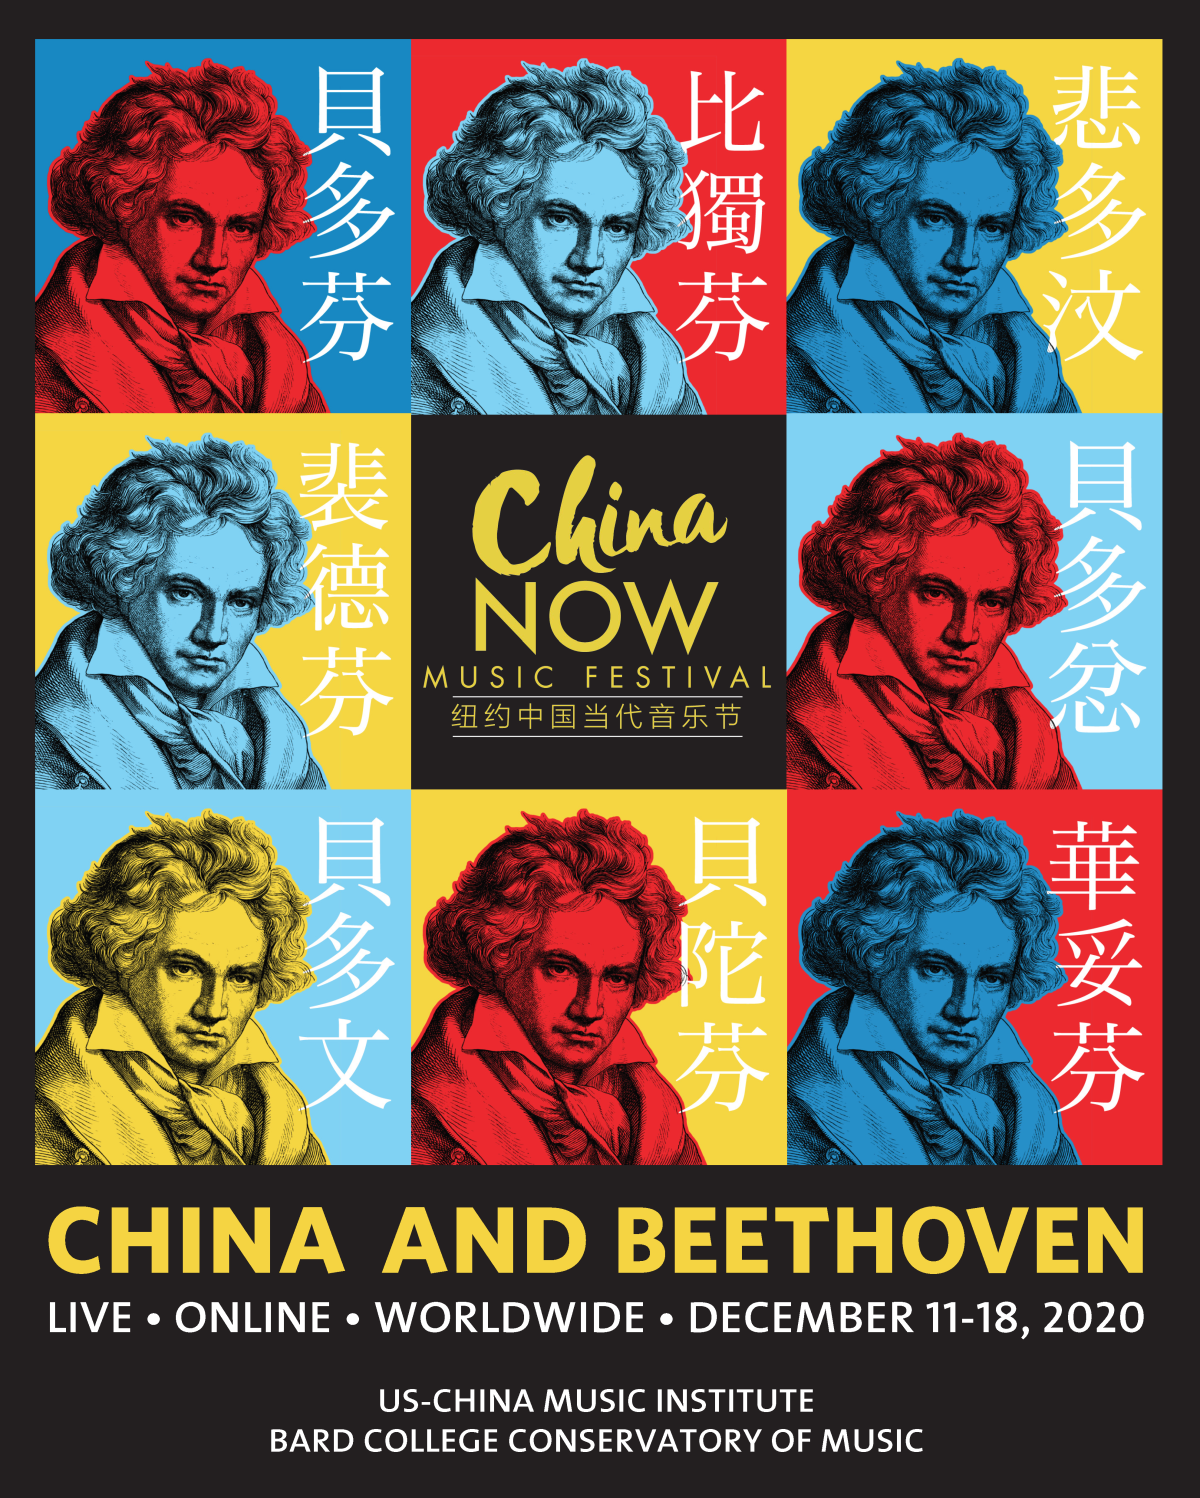 Beethoven in Beijing